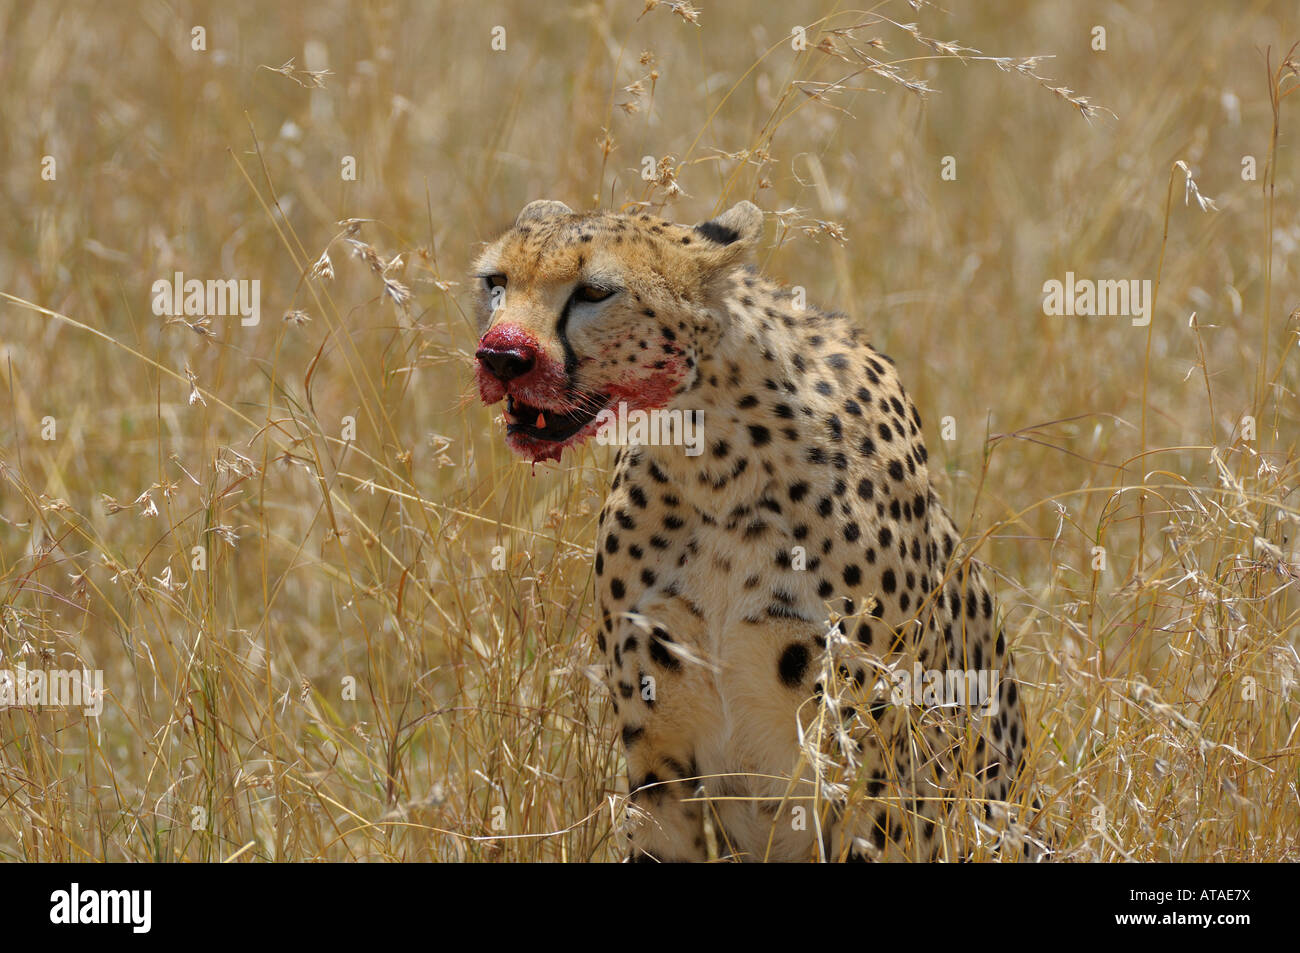 Cheetahs,a Cheetah at a gazelle kill, with blood on his mouth, Masai Mara,Kenya Stock Photo